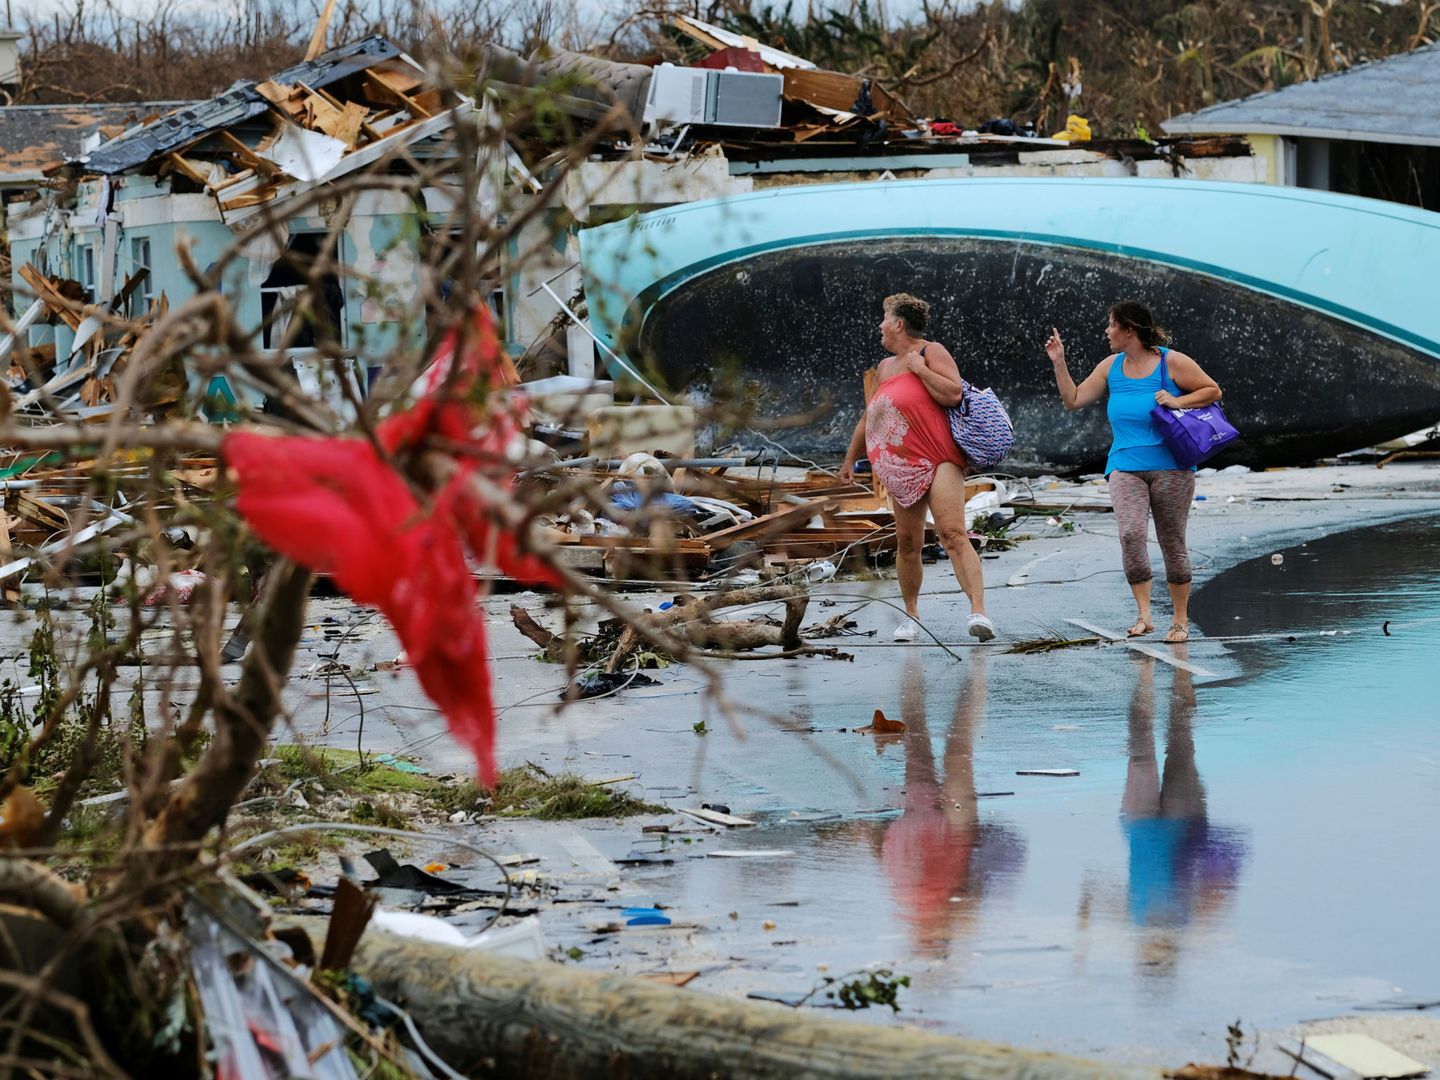 Unas mujeres caminan entre los escombros tras el paso del huracán Dorian por las Islas Ábaco, Bahamas (Reuters)